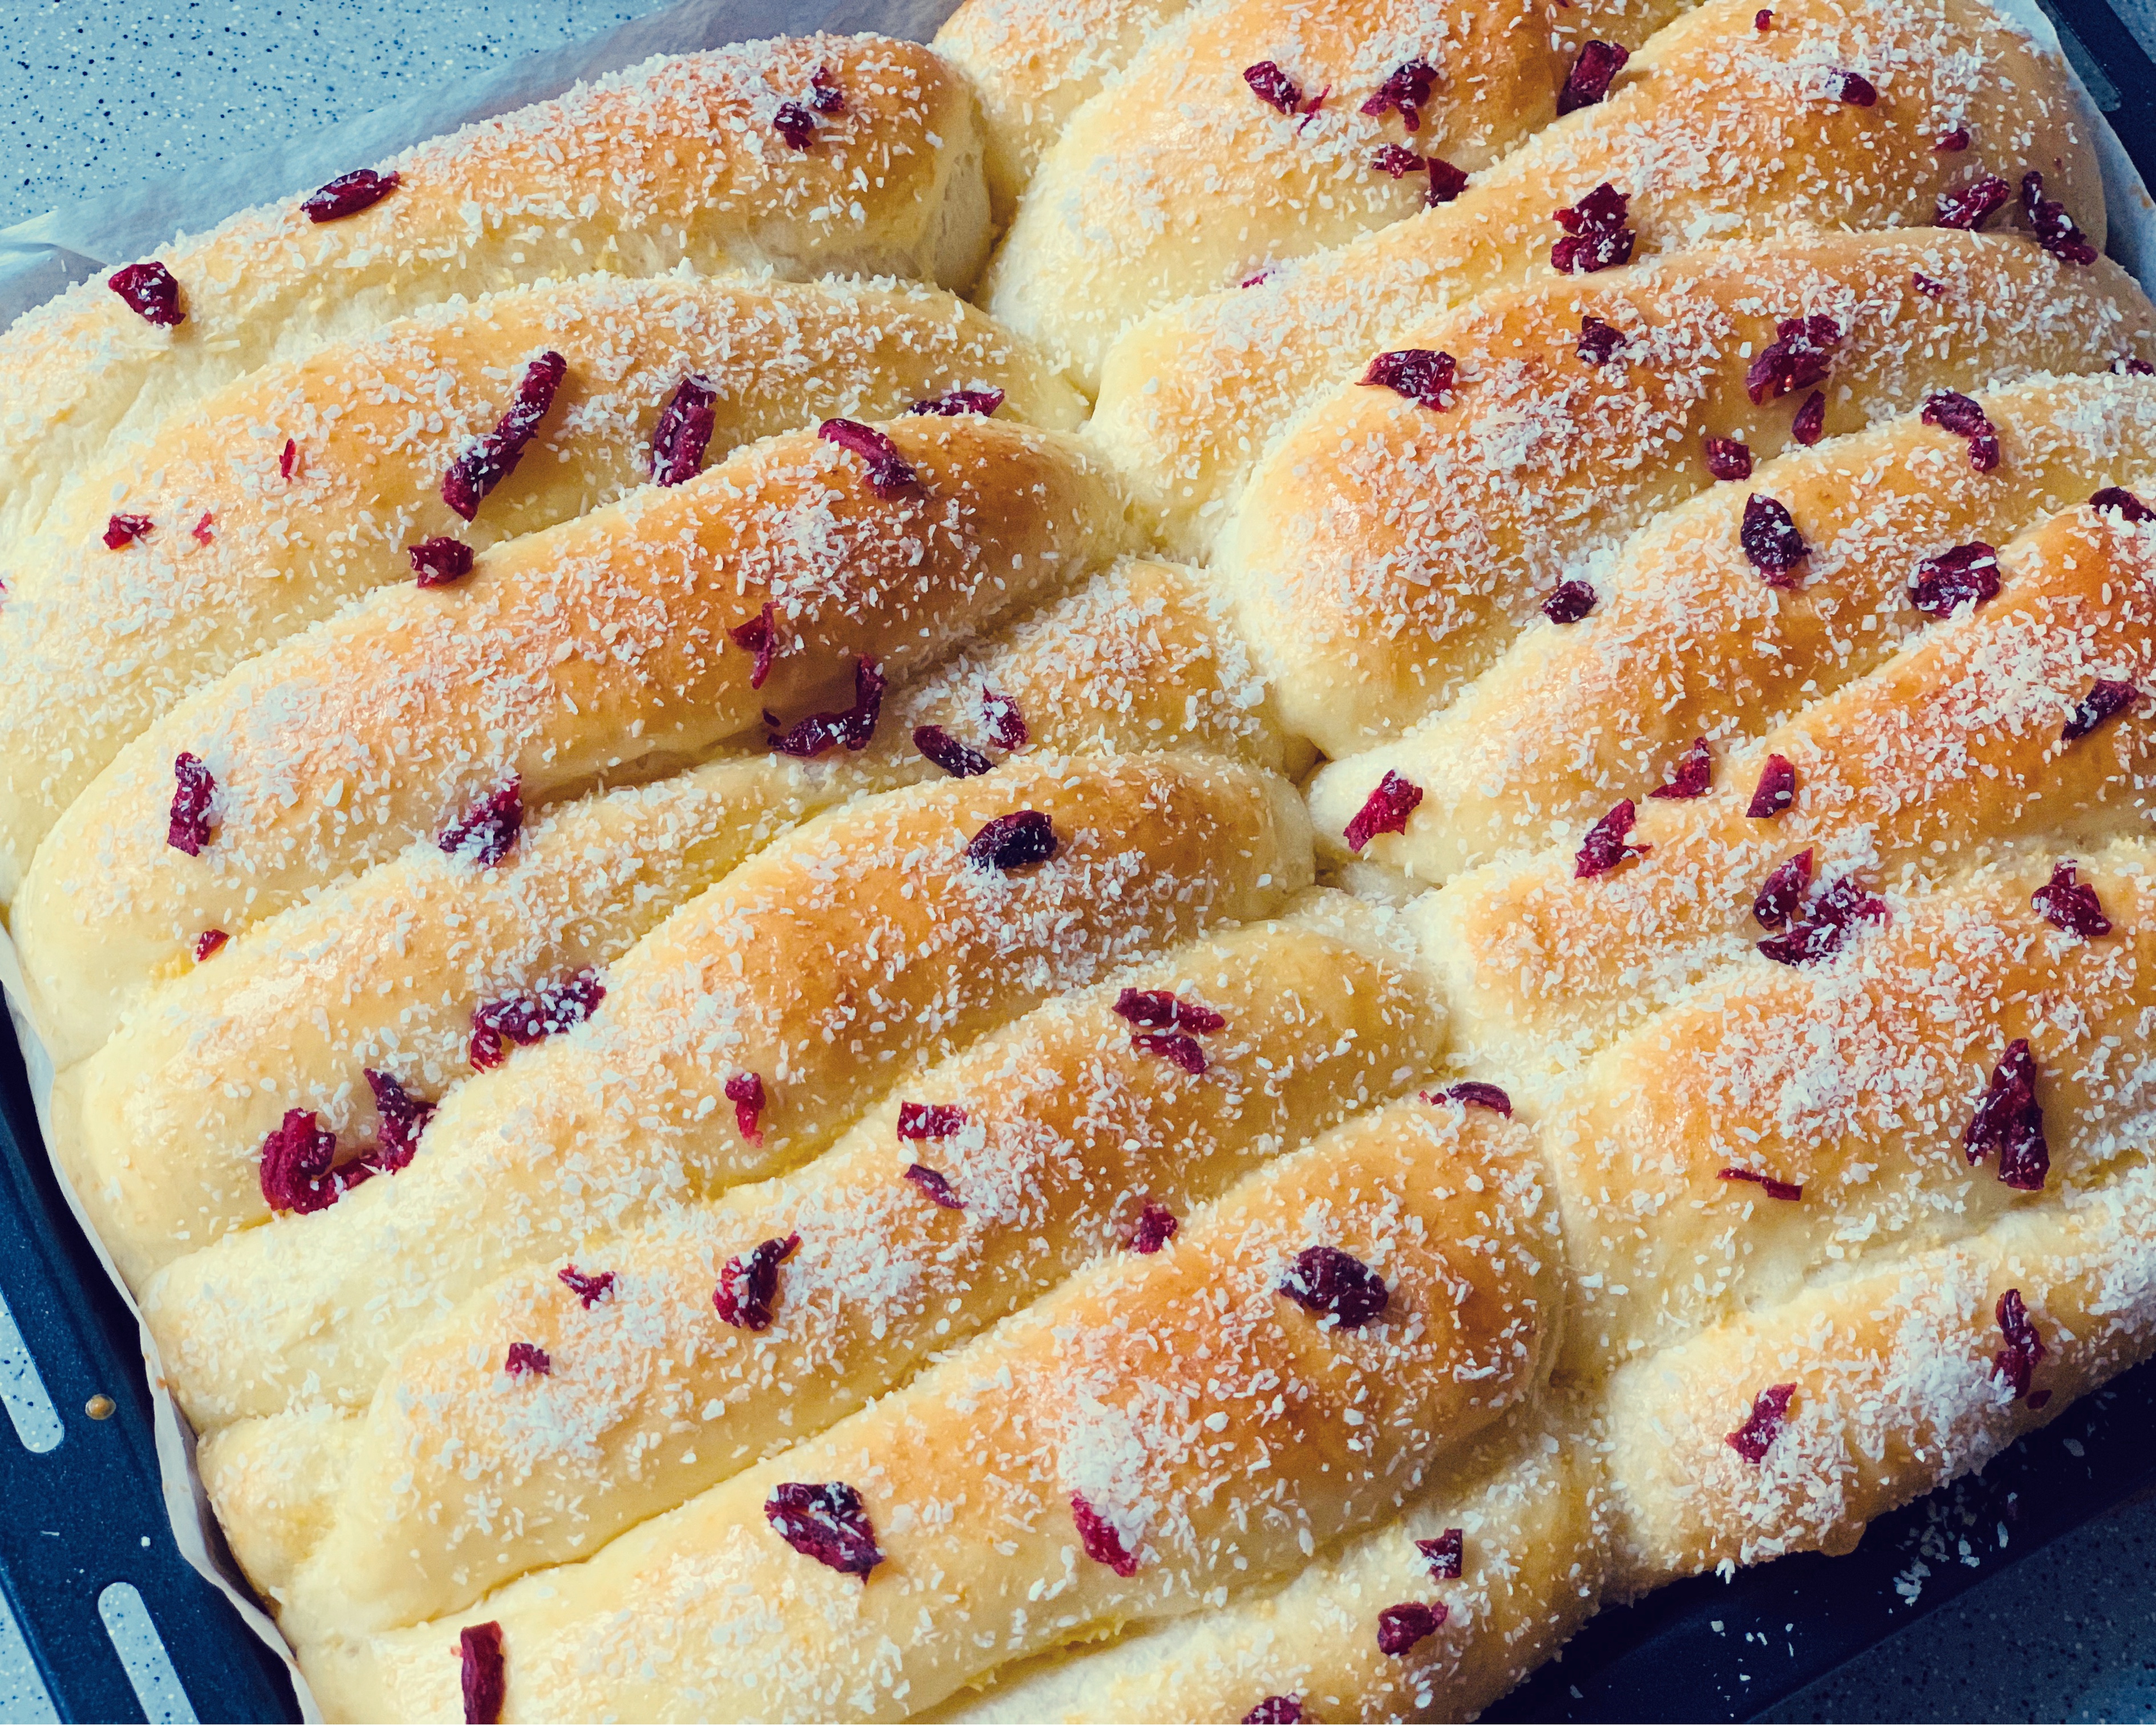 松软拉丝的面包机版蔓越莓雪山排包的做法